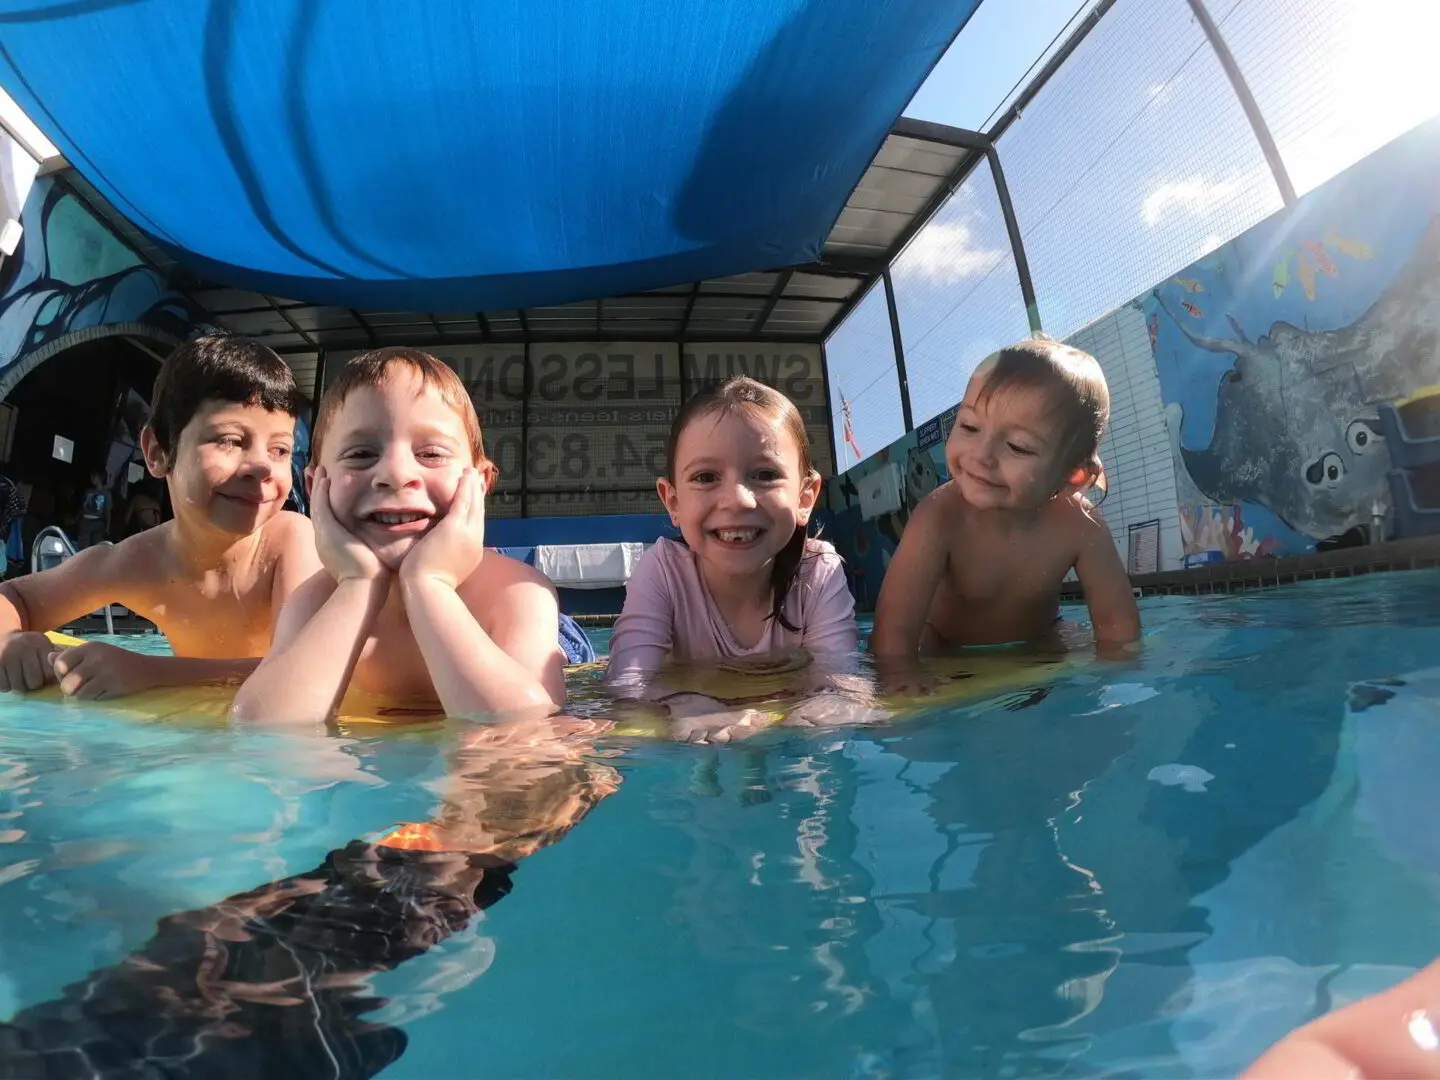 Four kids enjyoing swimming under water